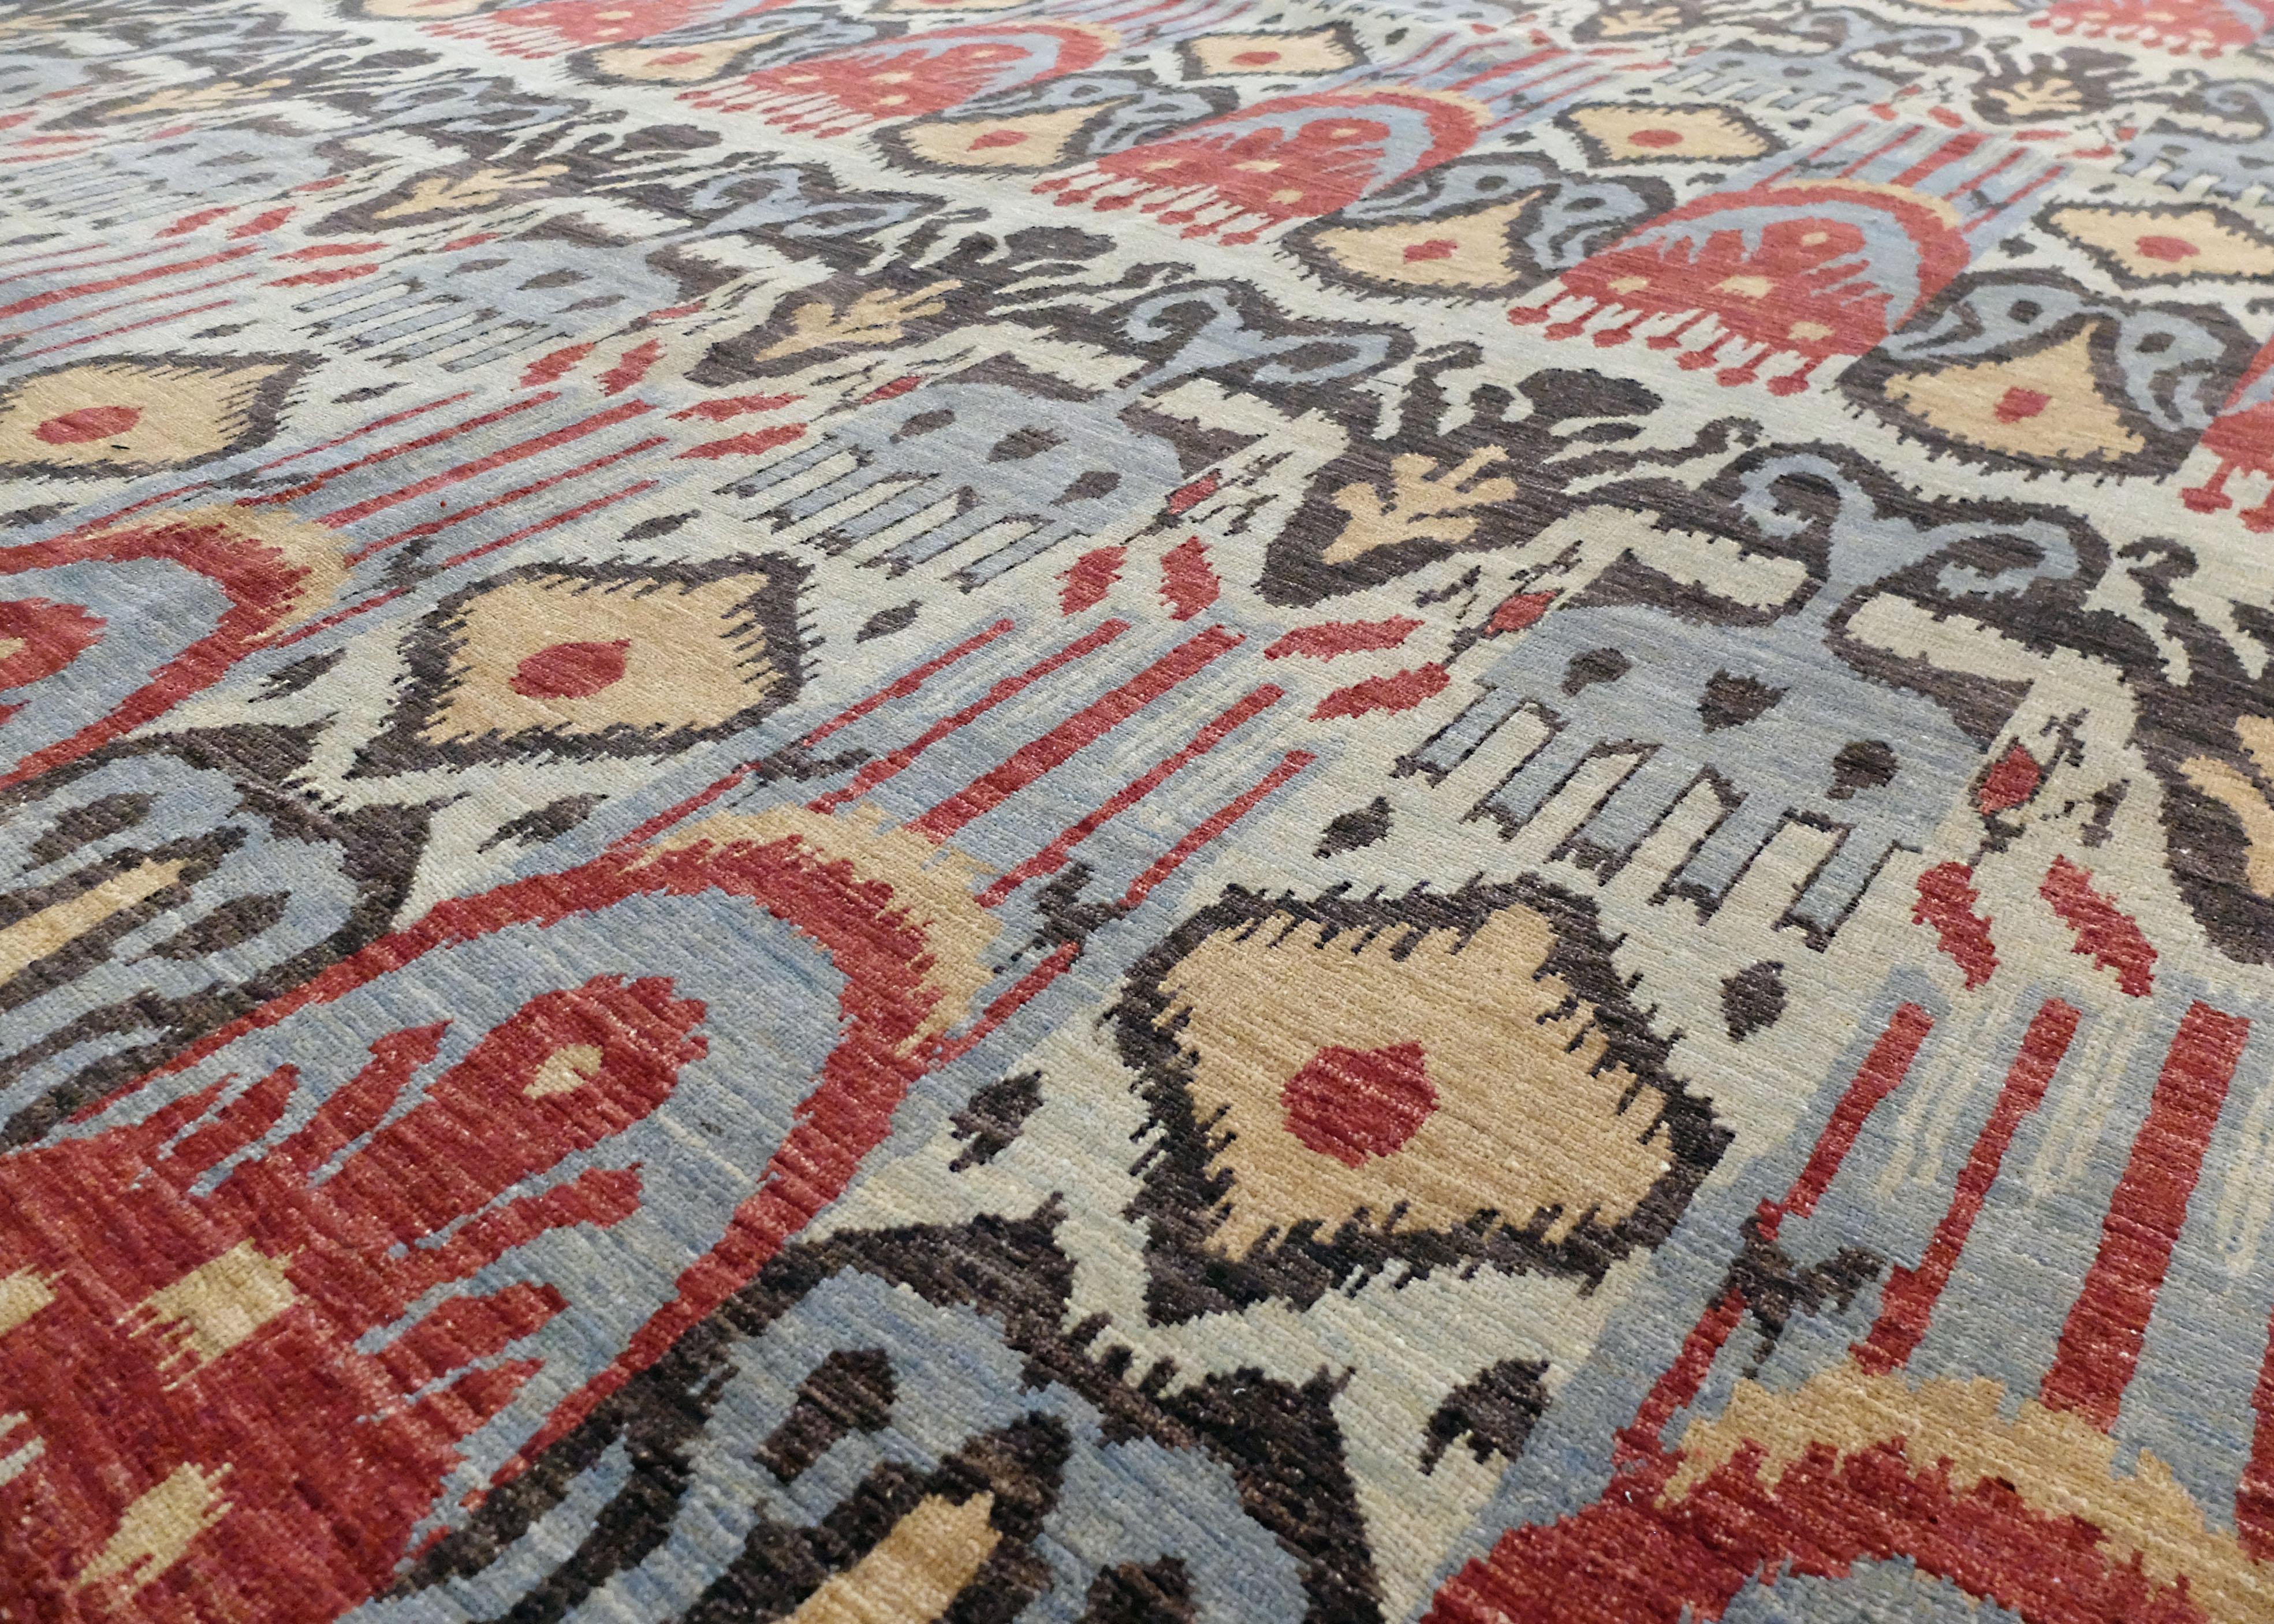 Il s'agit d'un tapis Ikat contemporain d'AM Contemporary. Il est composé de noir et de couleurs primaires : le rouge, le jaune et le bleu. Le tapis présente des formes organiques complexes qui constituent son motif principal, répété quatre fois à